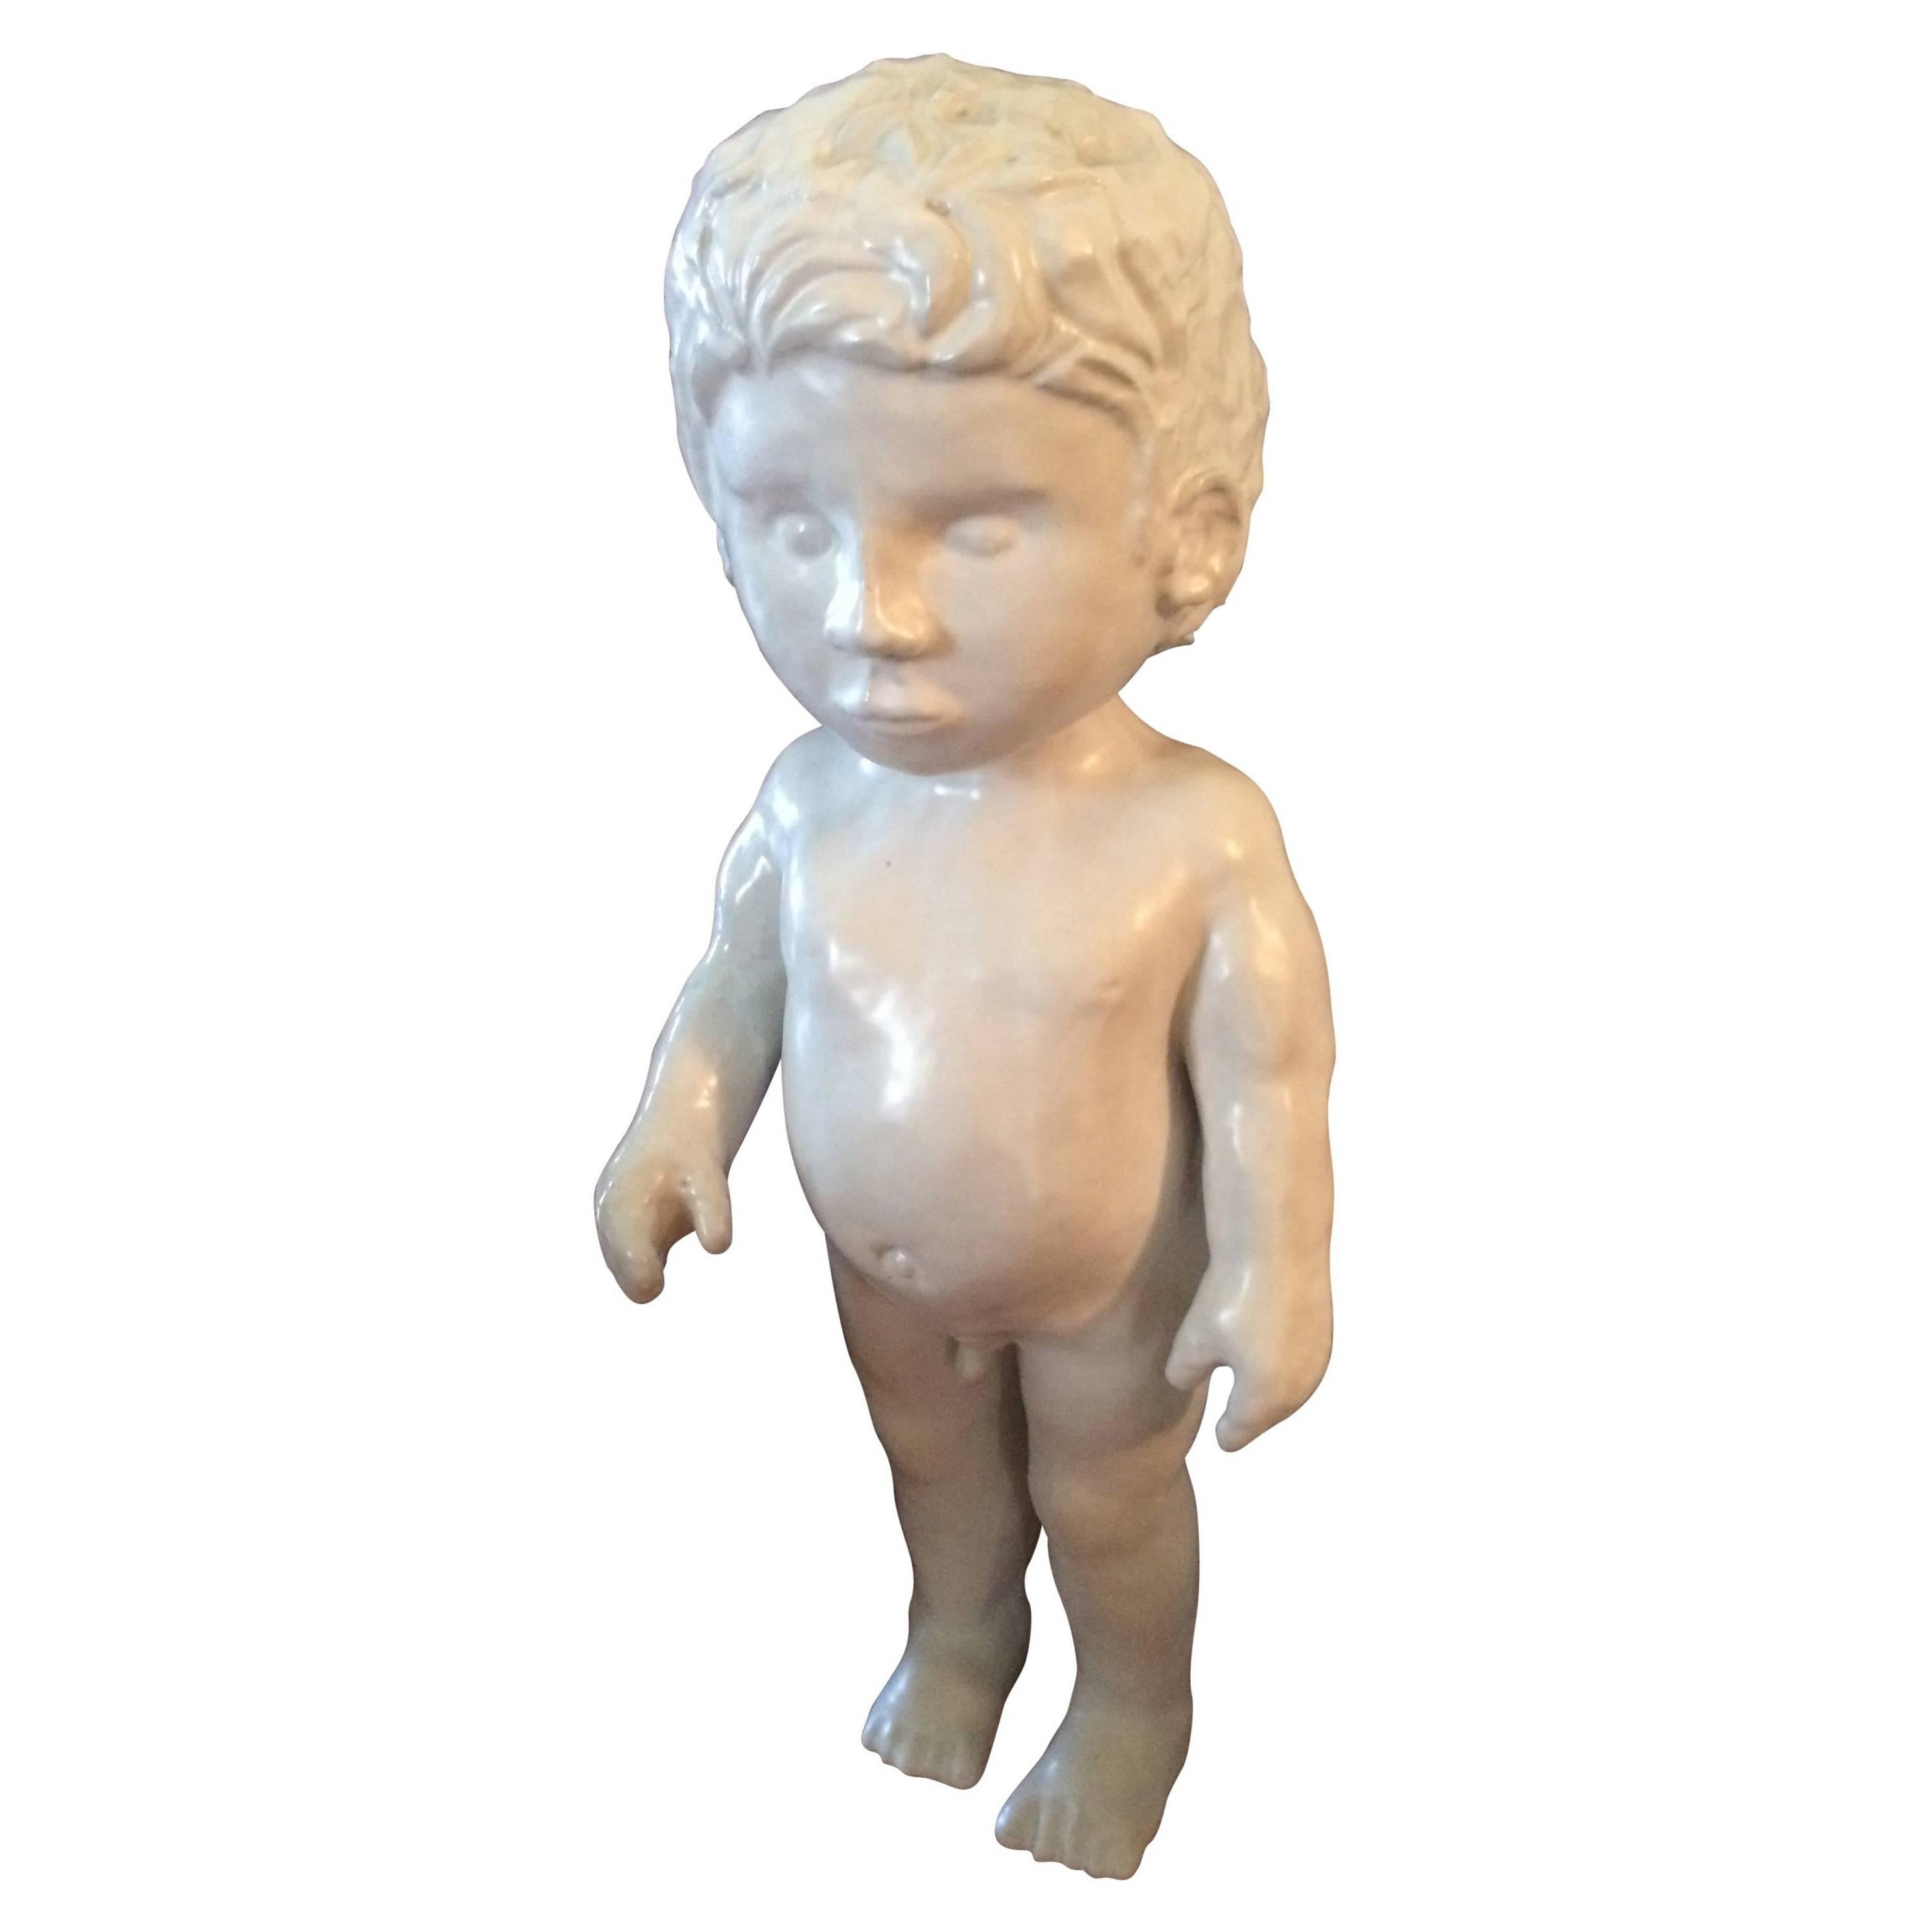 Porcelain Figure of a Boy